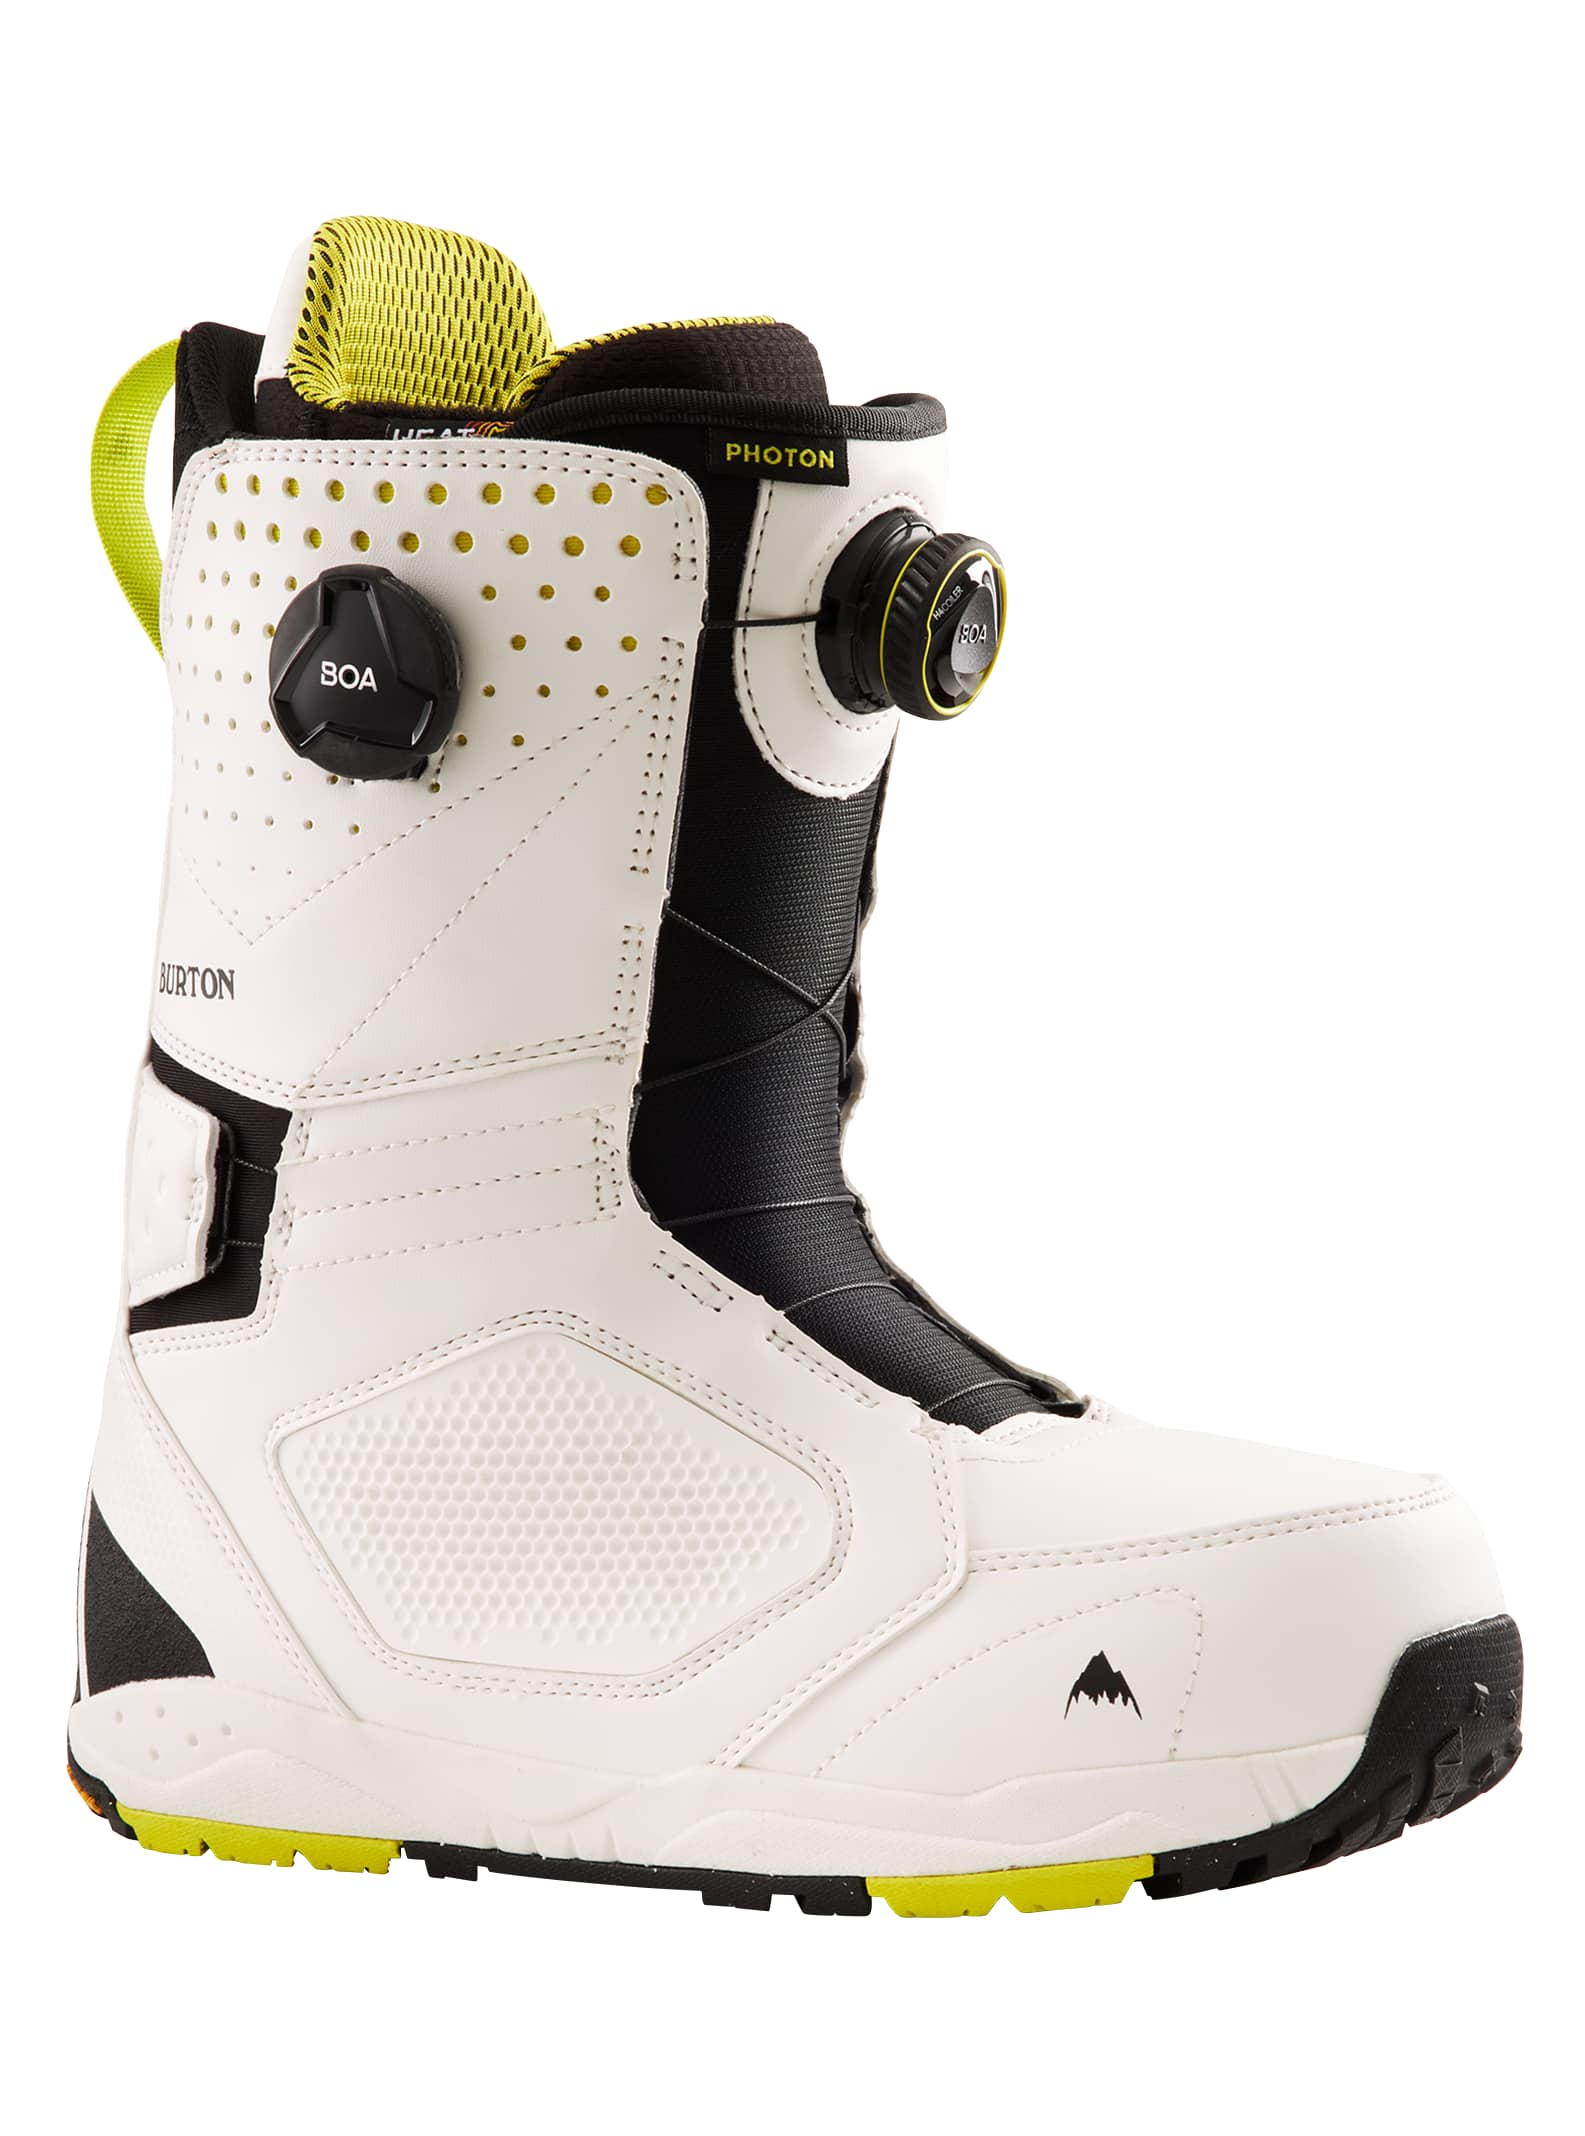 Burton - Boots de snowboard Photon BOA® pour homme, 14